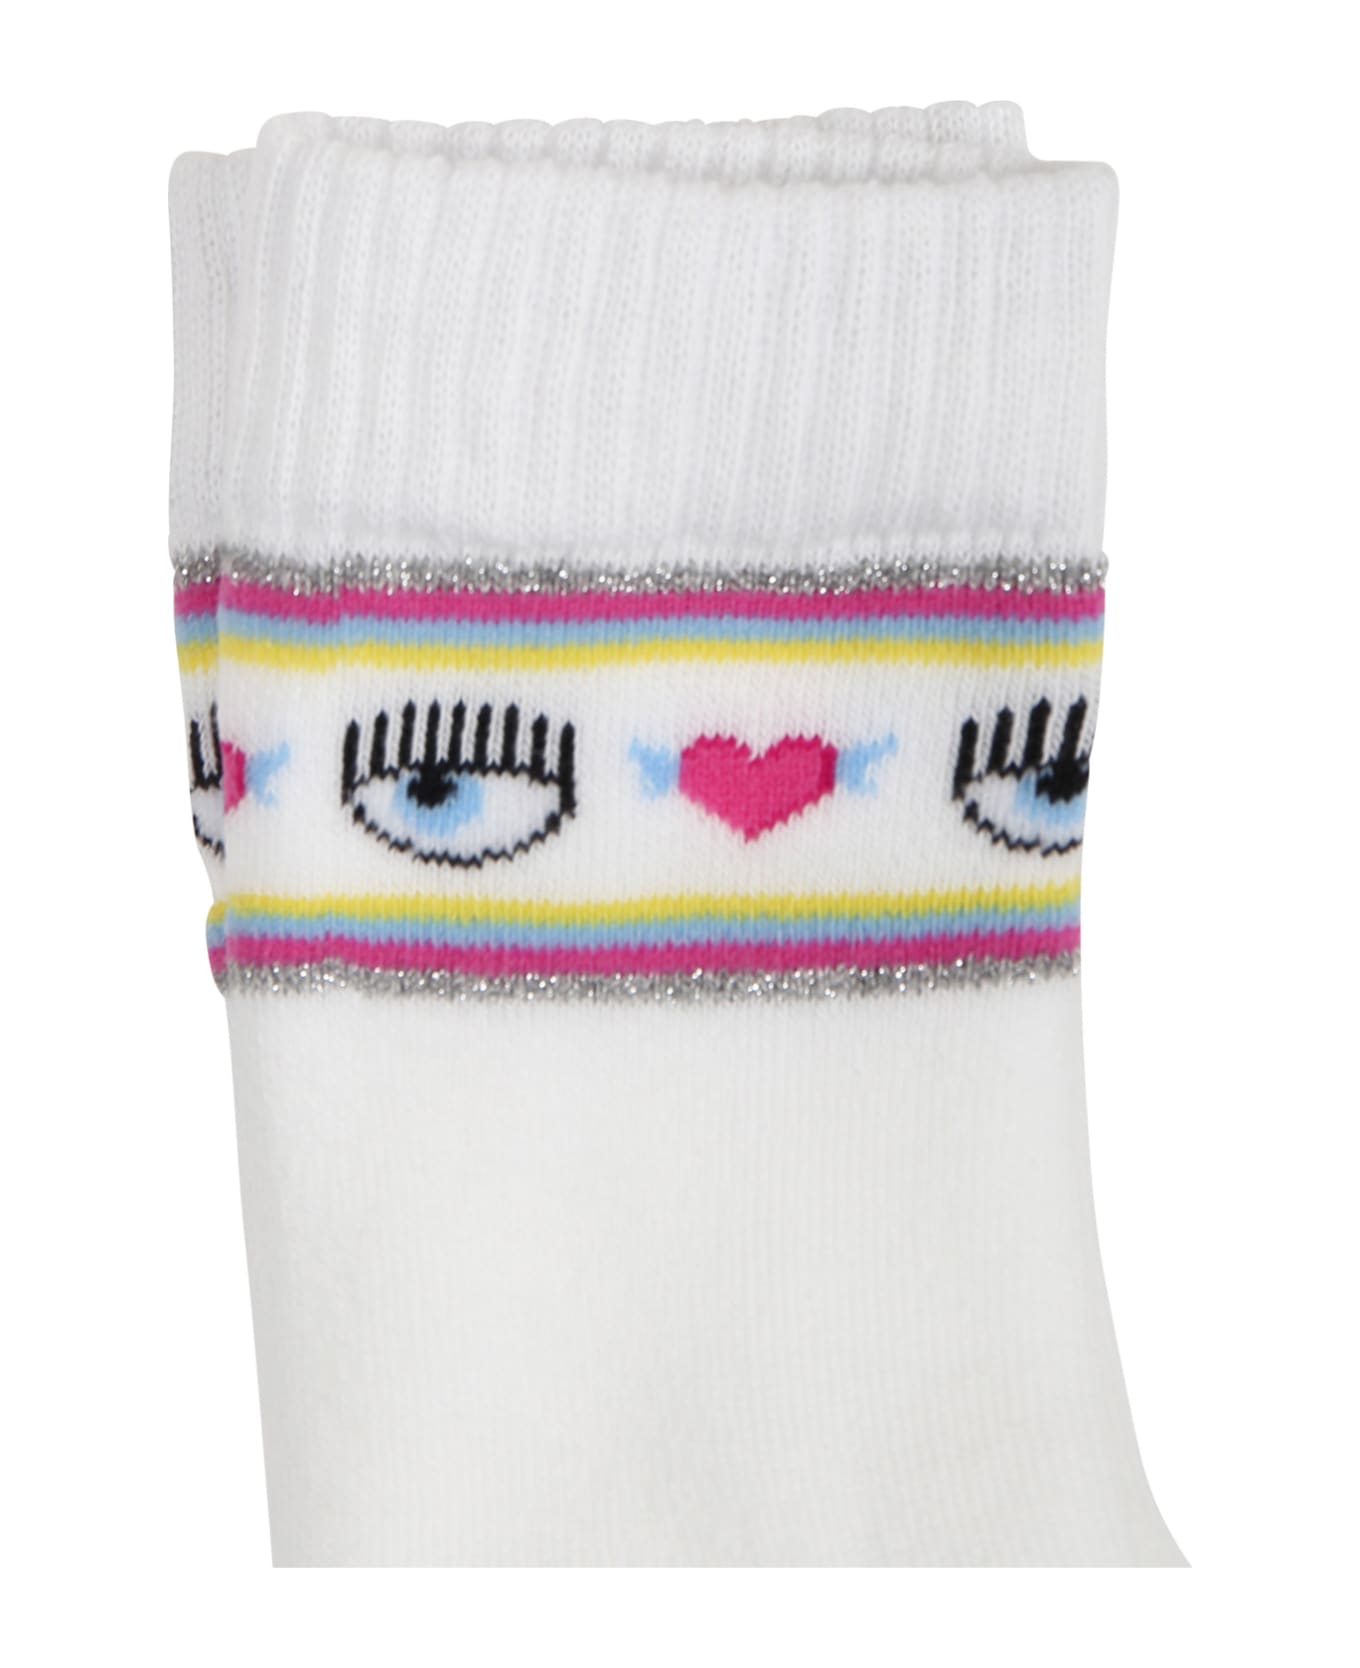 Chiara Ferragni White Socks For Girl With Flirting Eyes And Hearts - White アンダーウェア